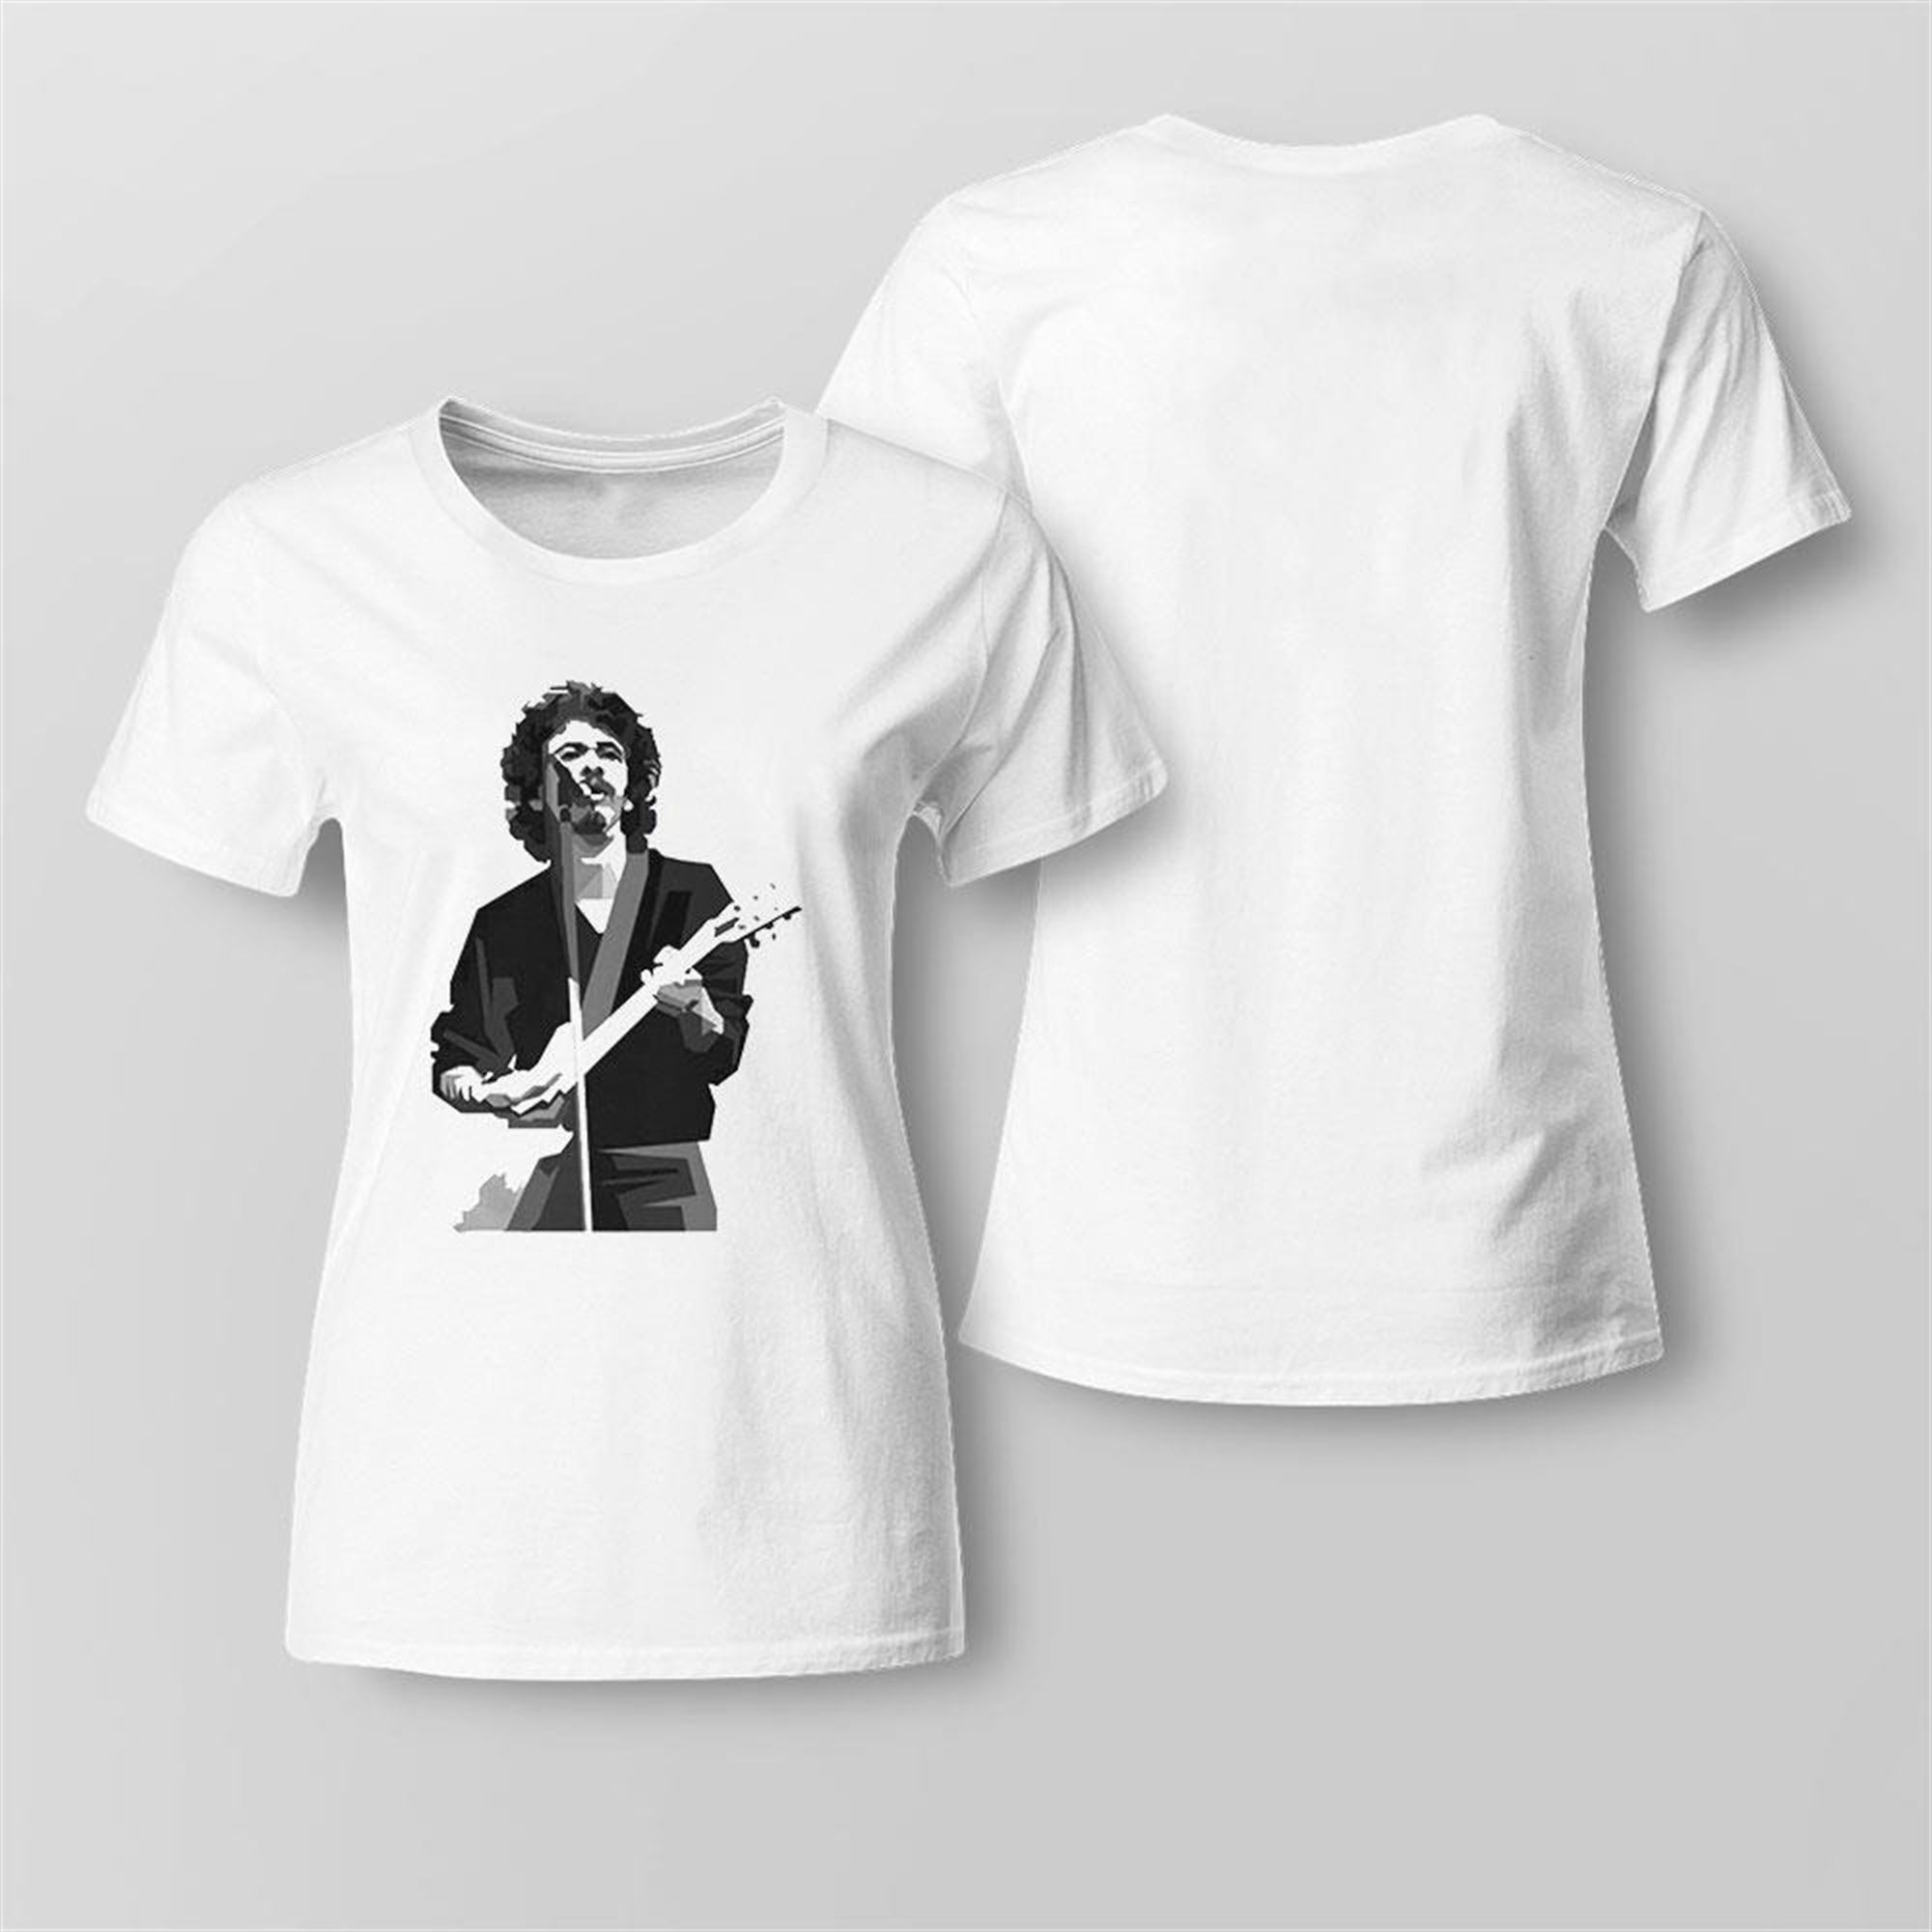 Young Carlos Santana Black White Shirt